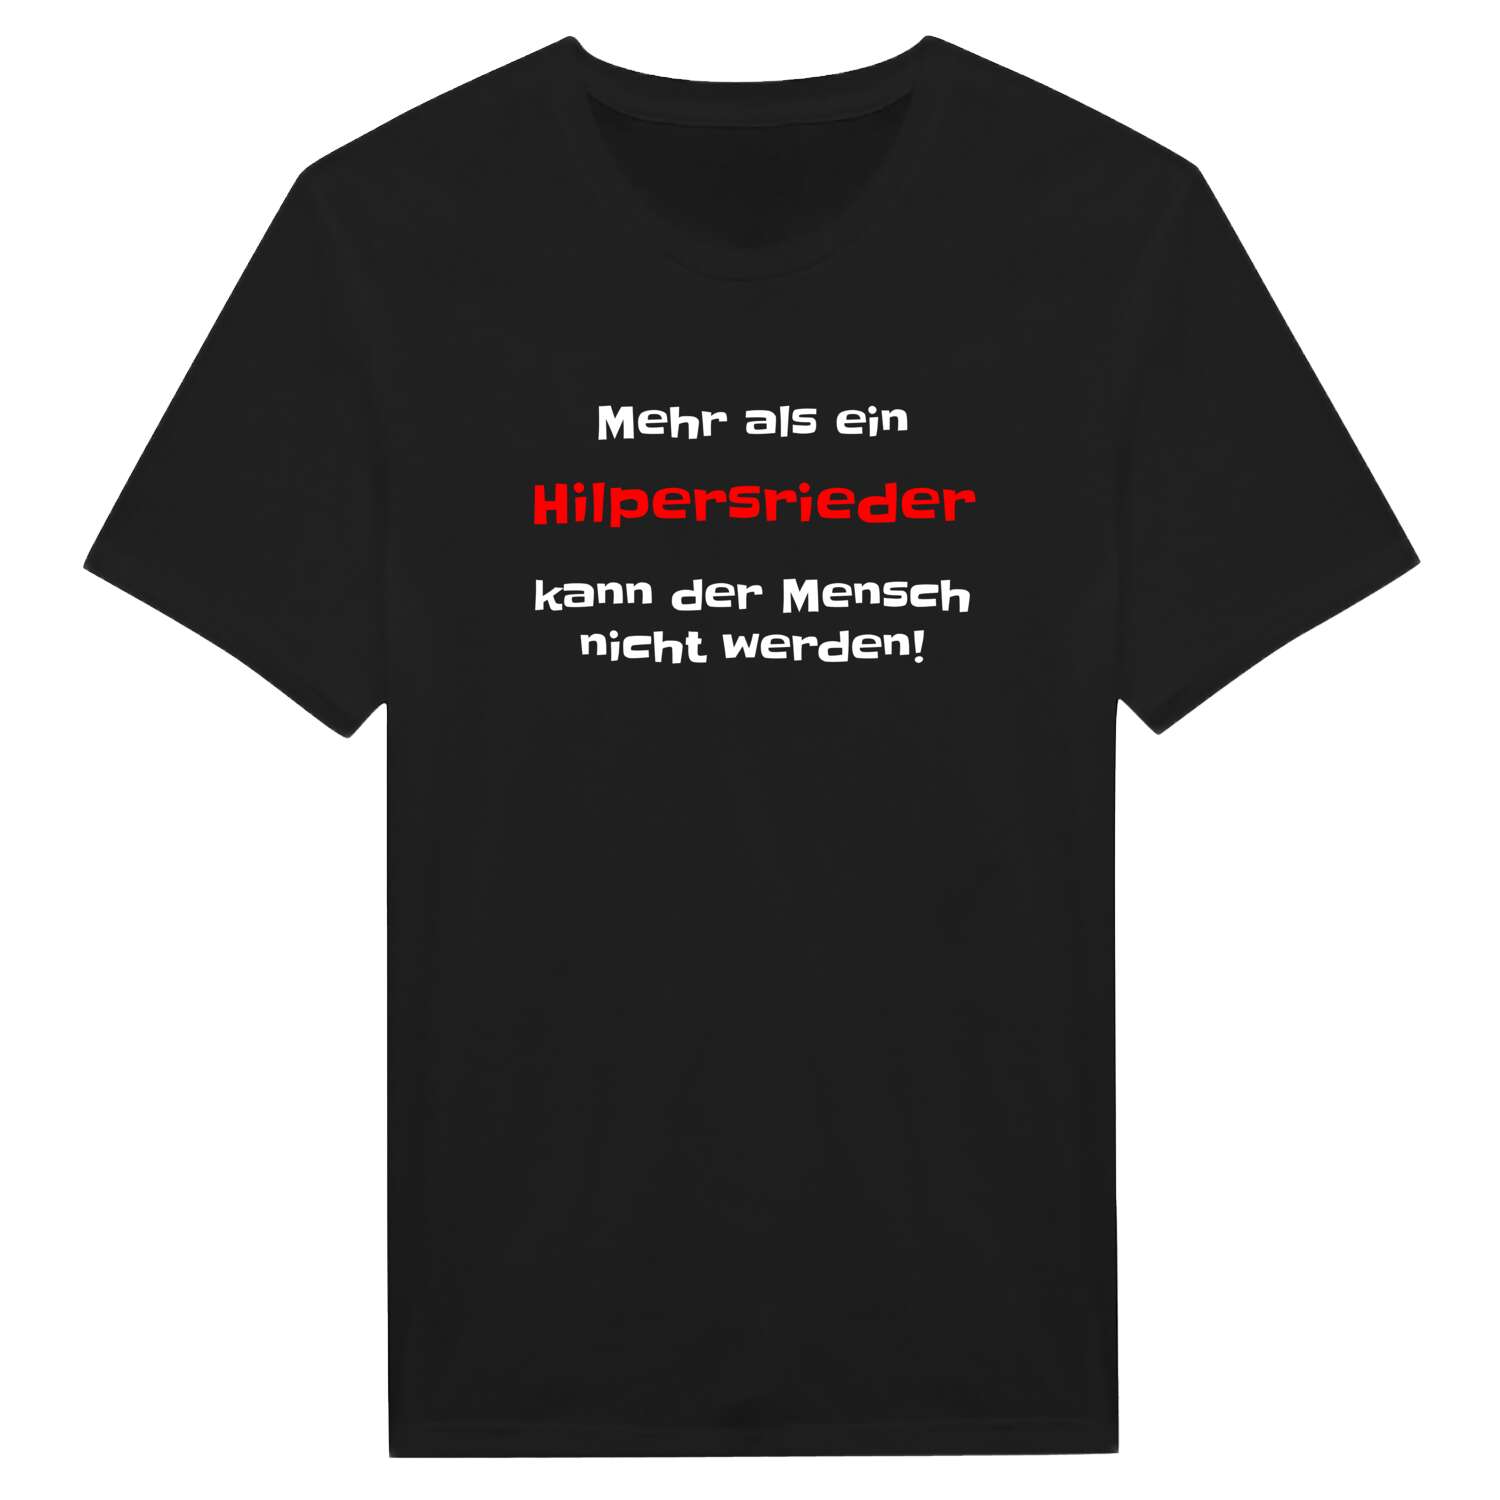 Hilpersried T-Shirt »Mehr als ein«